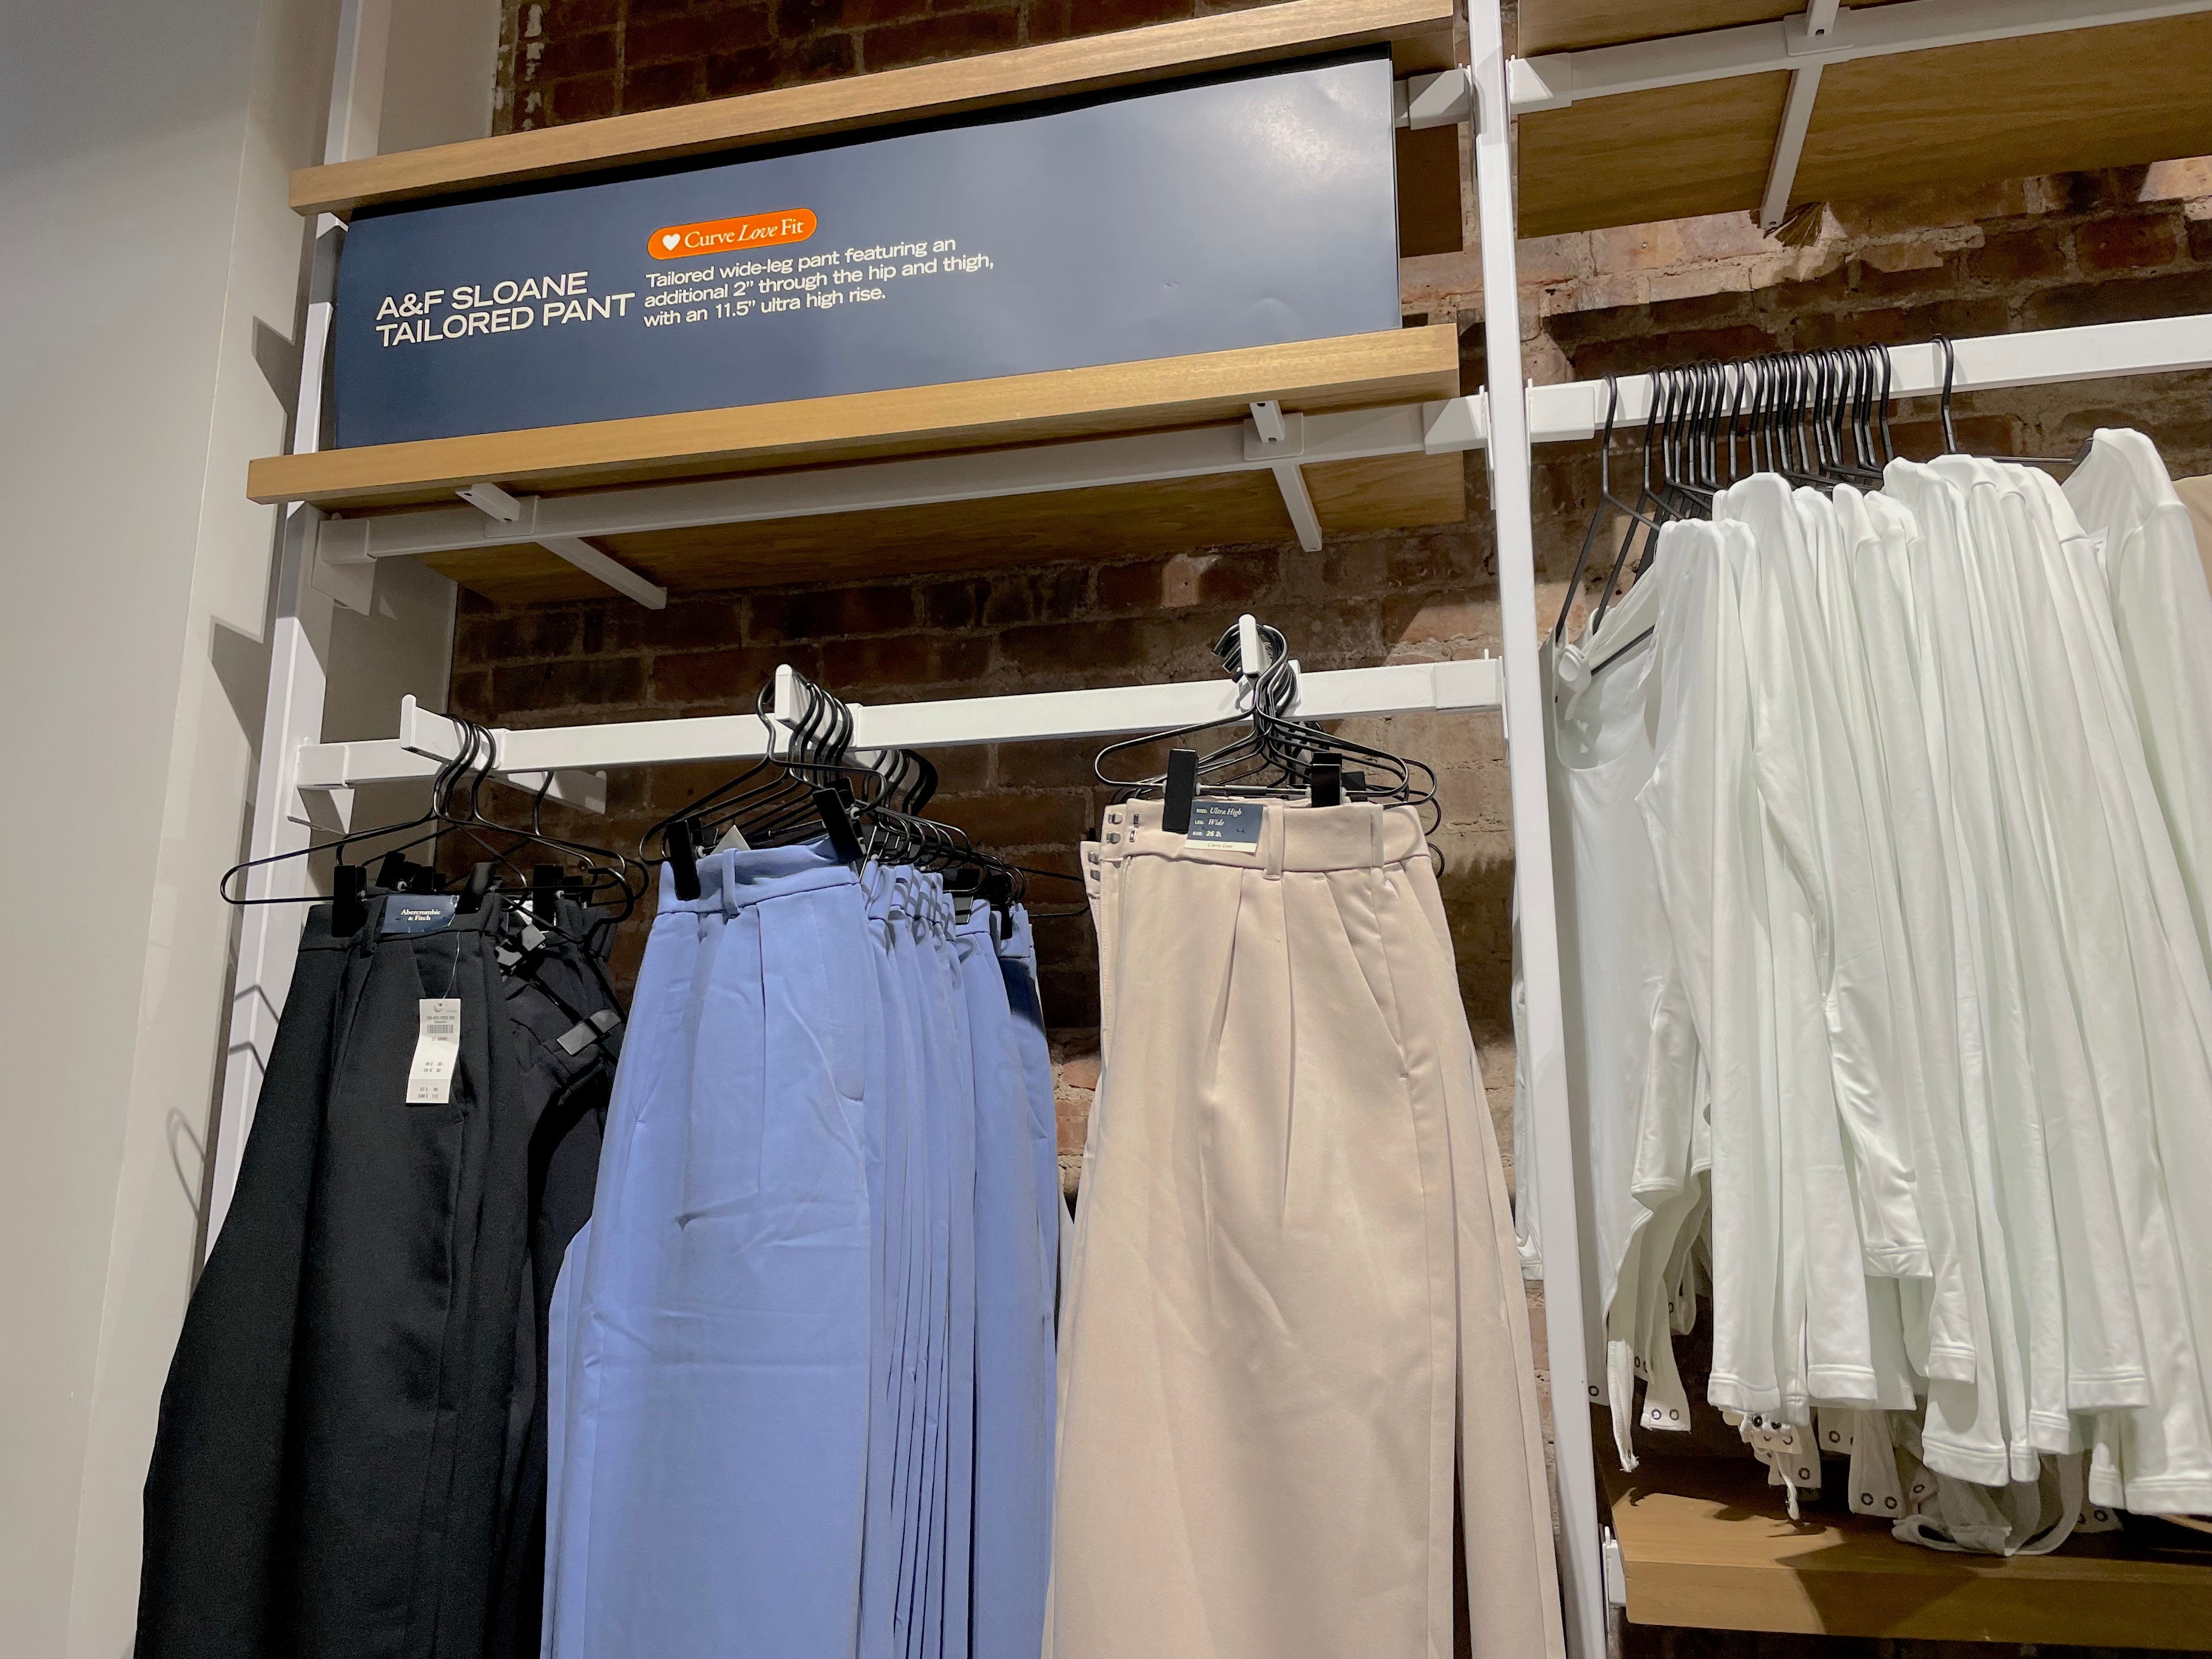 Hosen werden auf Wandregalen im Geschäft von Abercrombie and Fitch ausgestellt